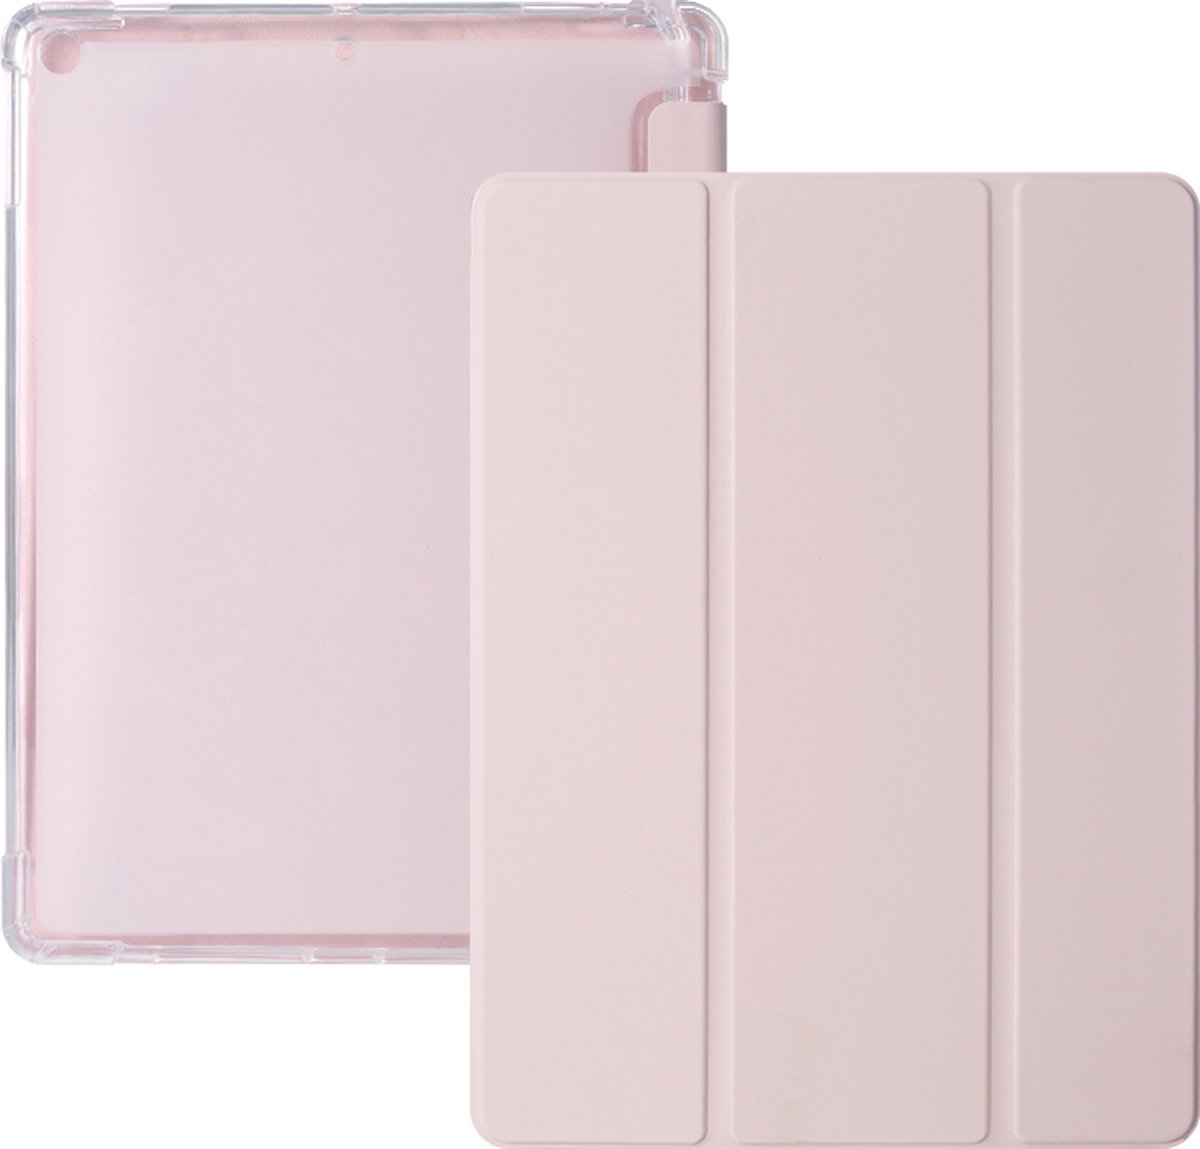 iPad 2021 Hoes - iPad 10.2 2019/2020/2021 Case - iPad 10.2 Hoesje Roze - Clear Back Folio Cover met Apple Pencil Opbergvak - Hoesje voor iPad 10.2 7e, 8e en 9e generatie